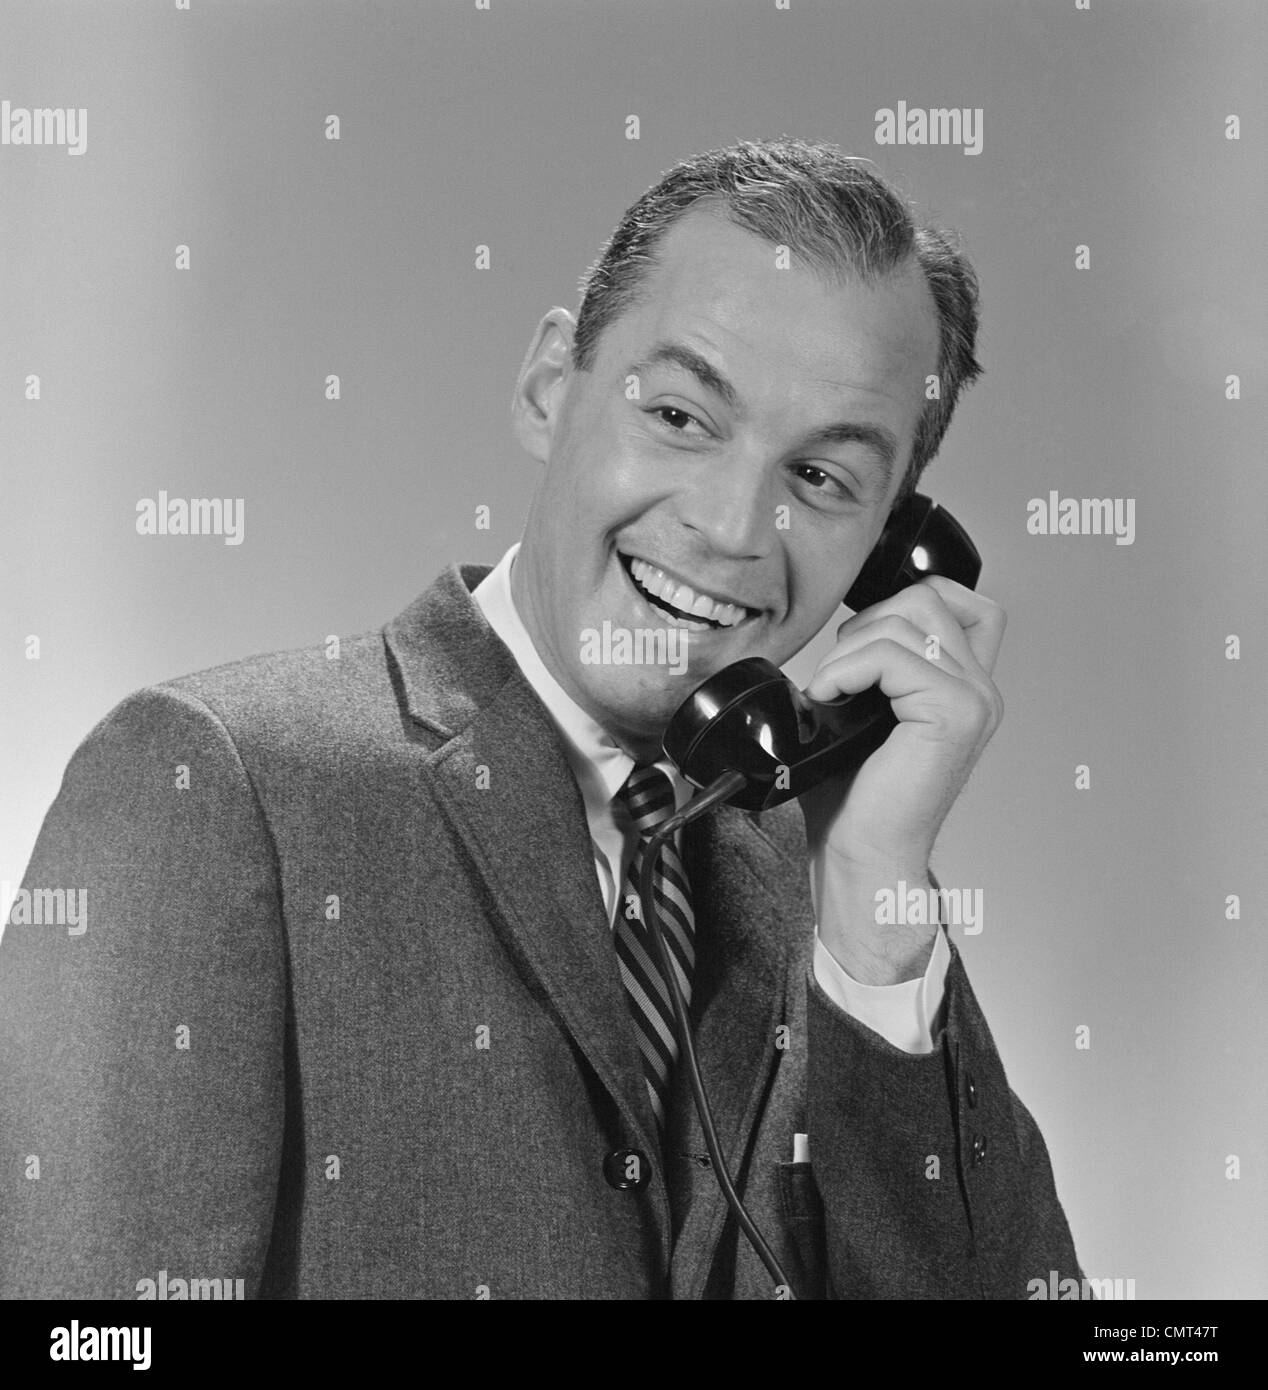 Années 1950 Années 1960 SMILING BUSINESS MAN CONVERSATION TÉLÉPHONIQUE Banque D'Images